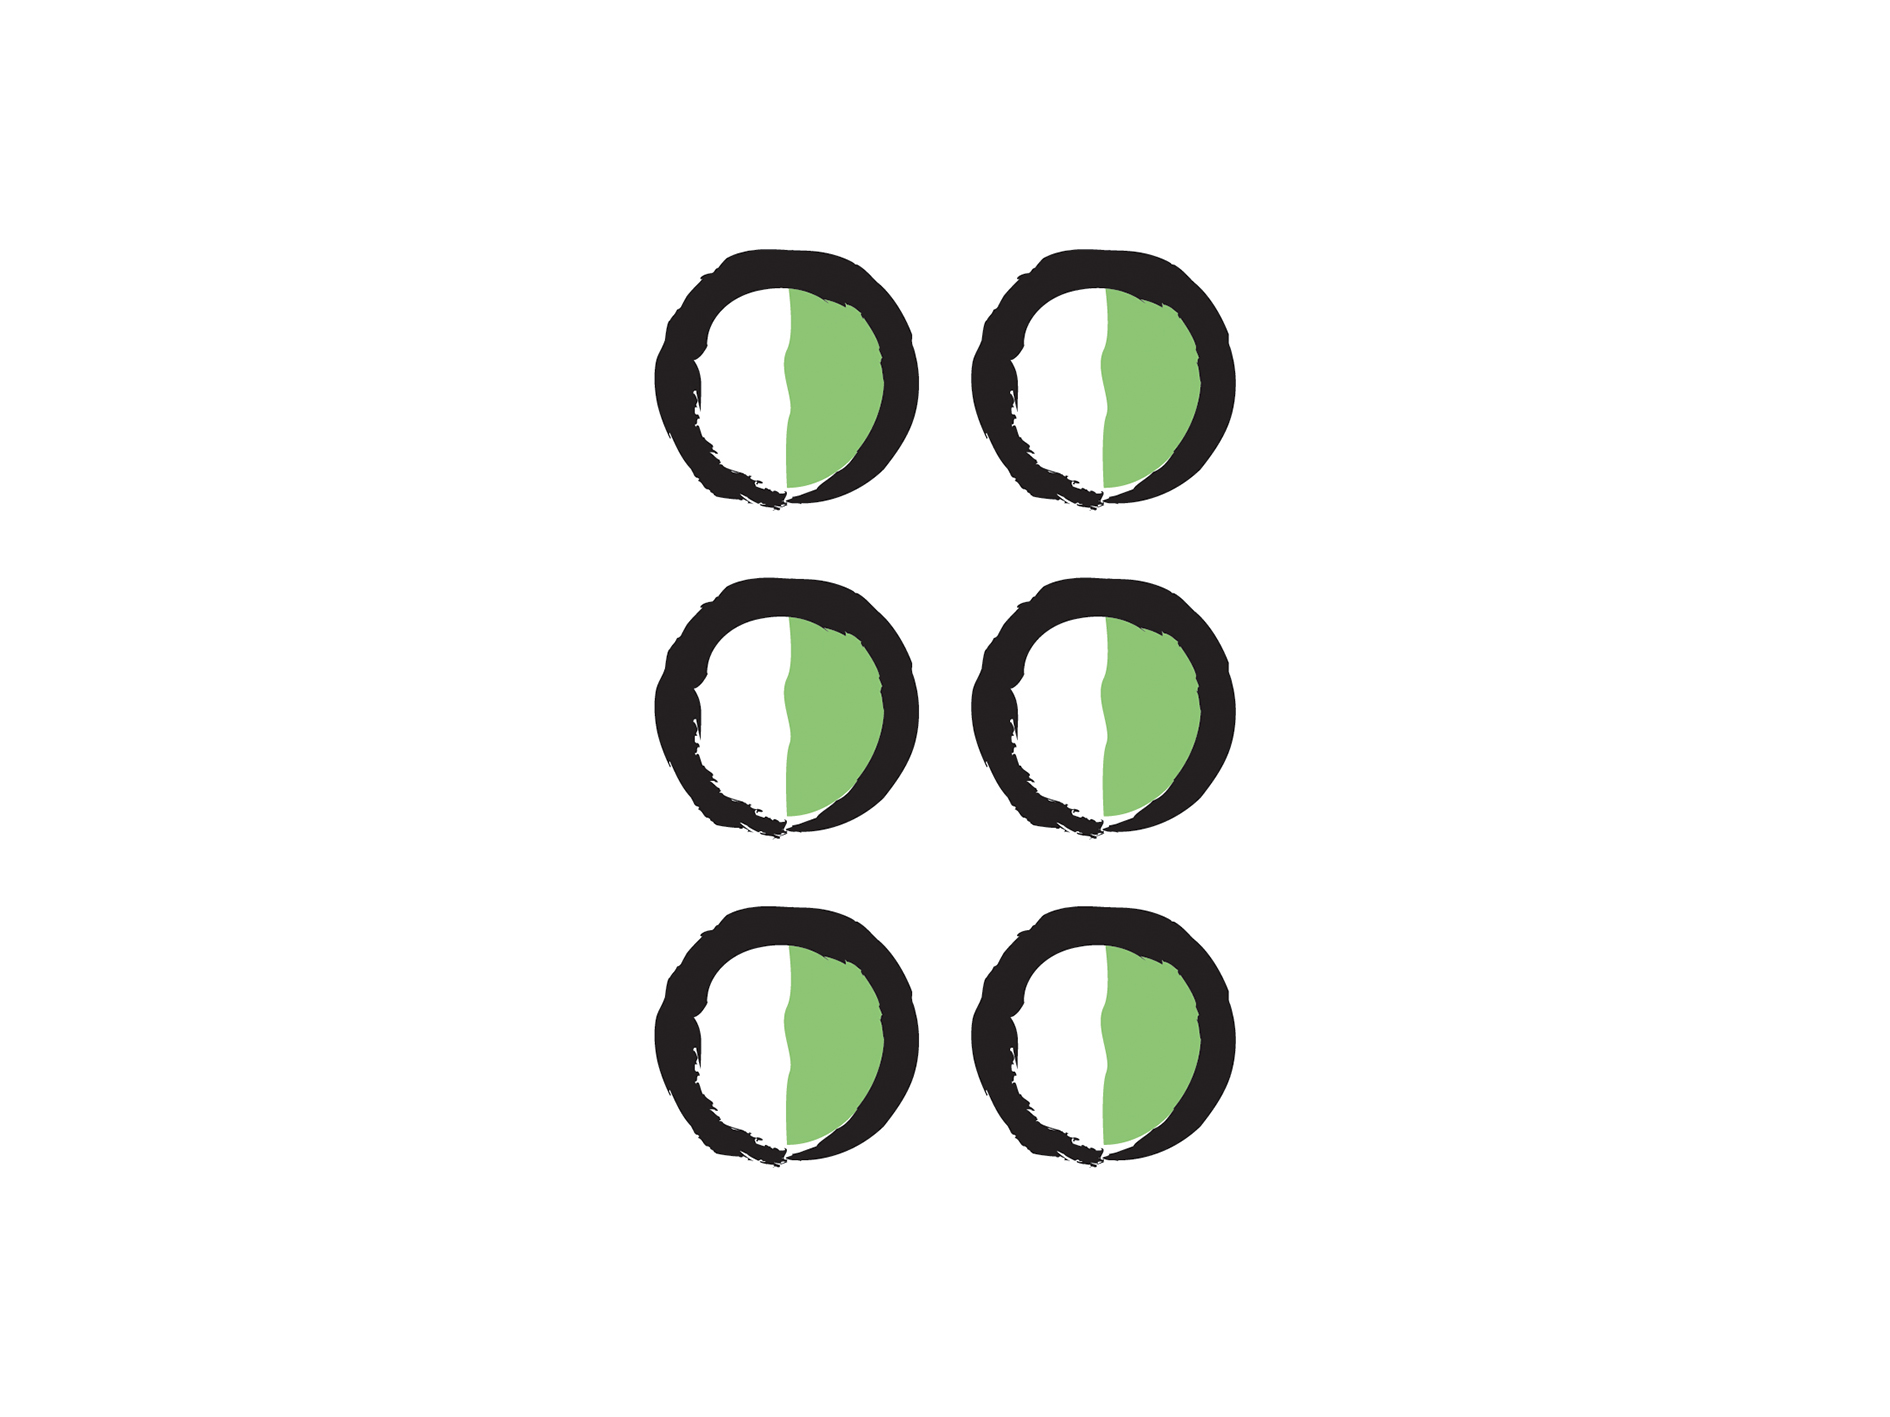 L’icône braille. Une illustration de six points représentant une cellule braille.